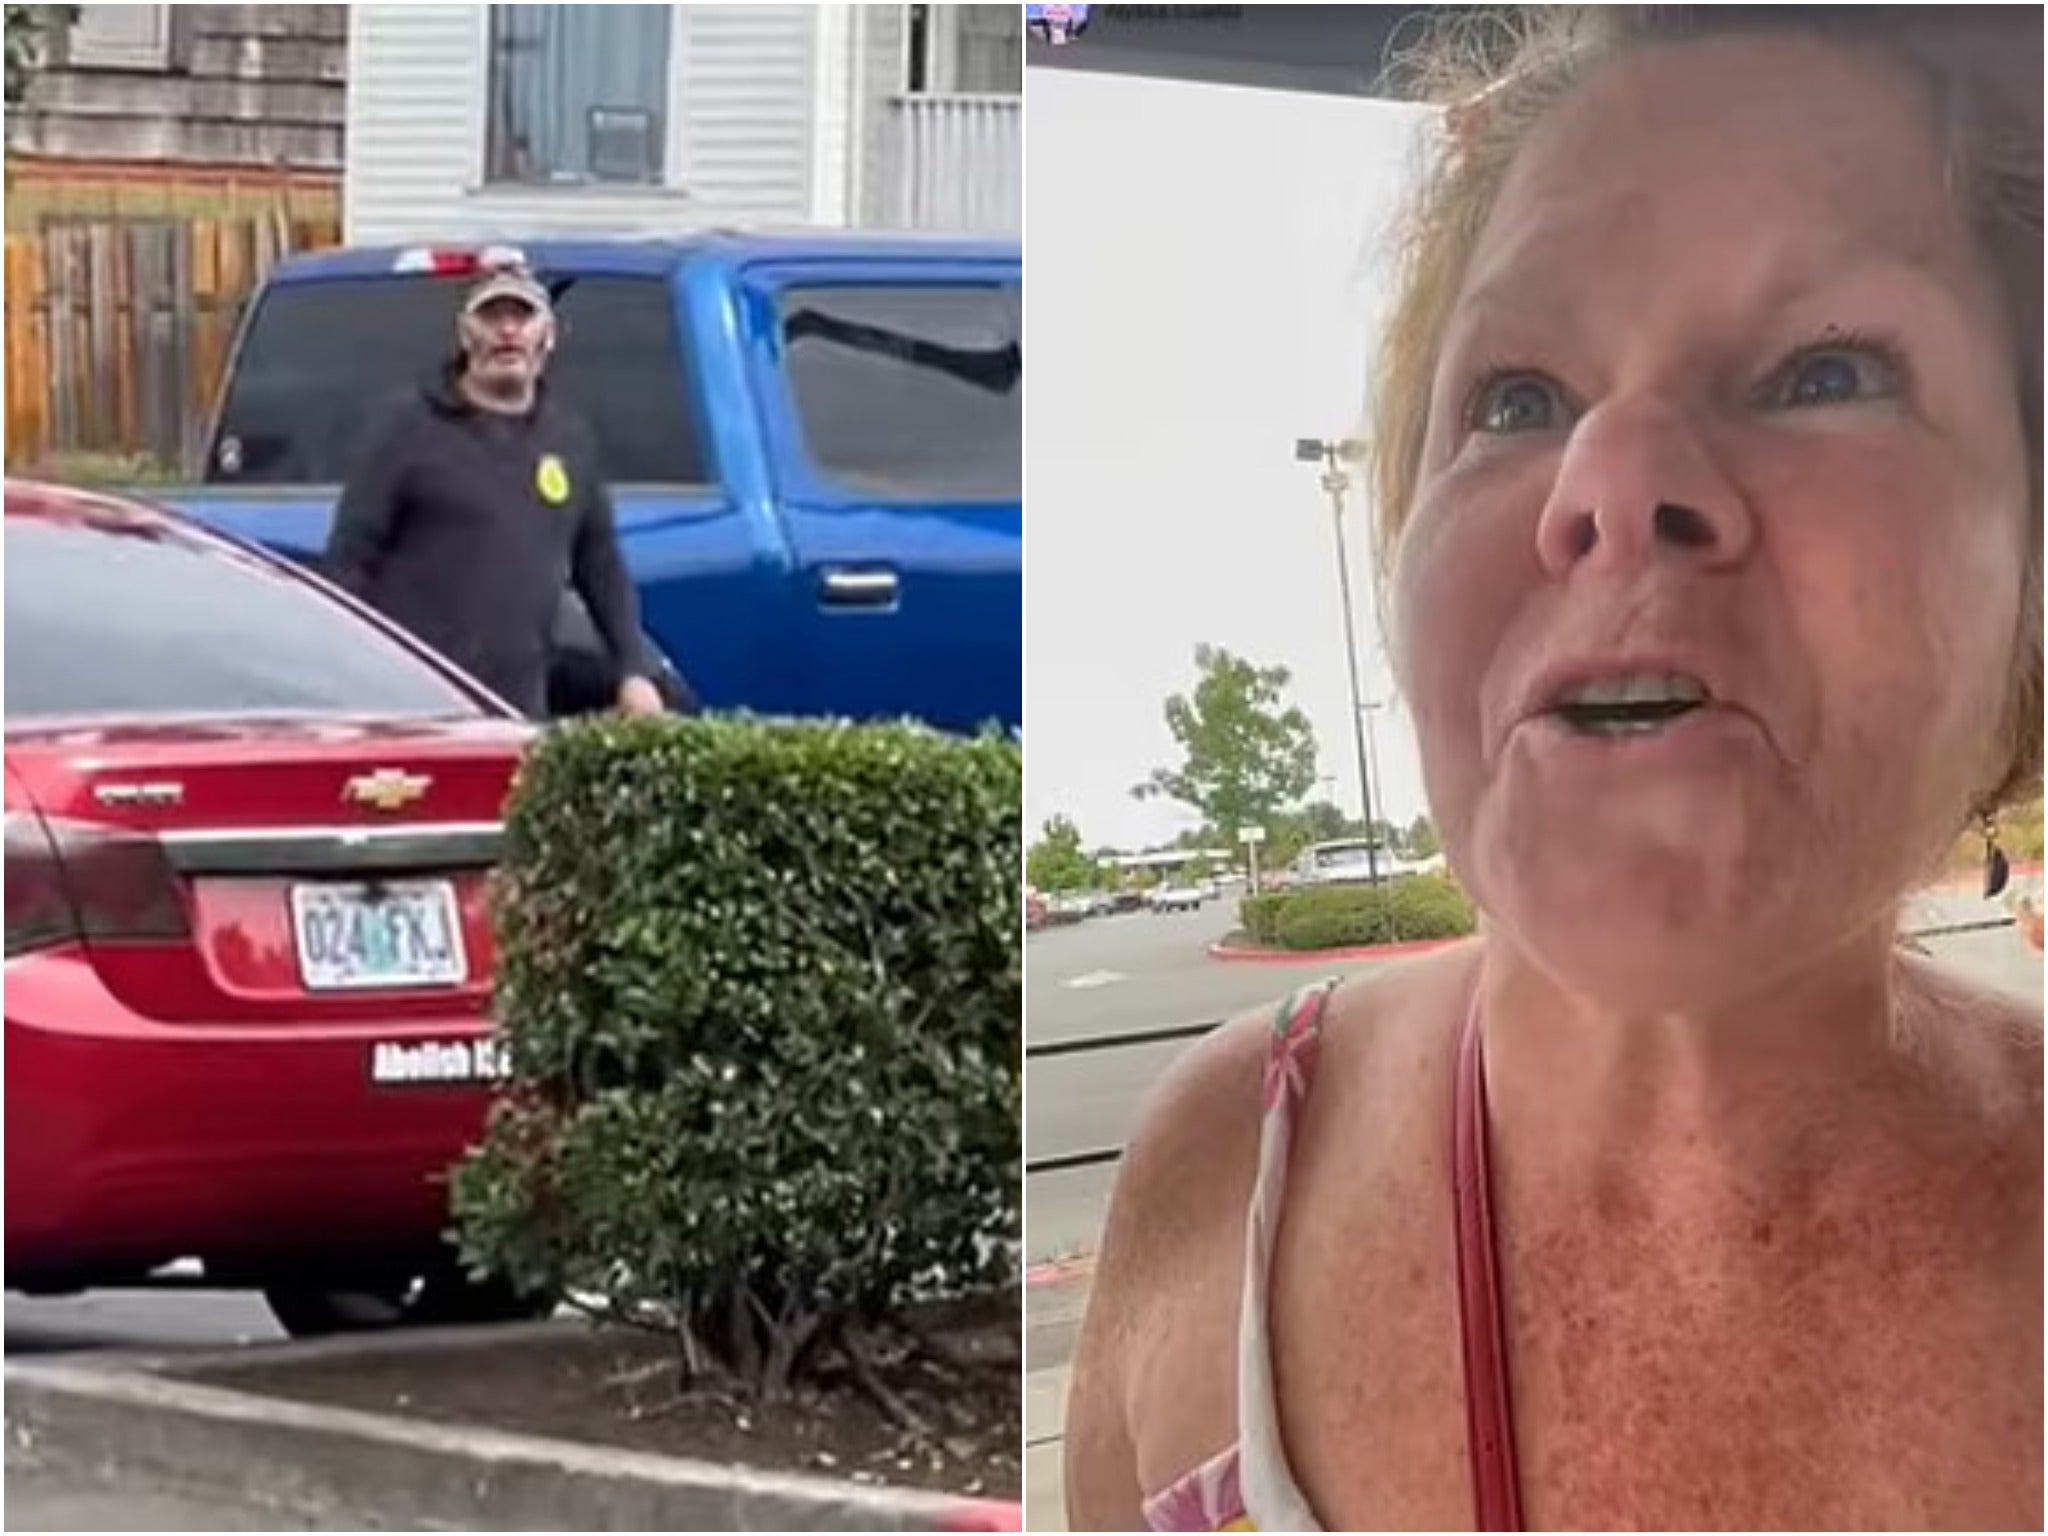 Una mujer de 57 años fue arrestada después de "atacar" a un conductor con una calcomanía de "Abolir ICE" en su automóvil